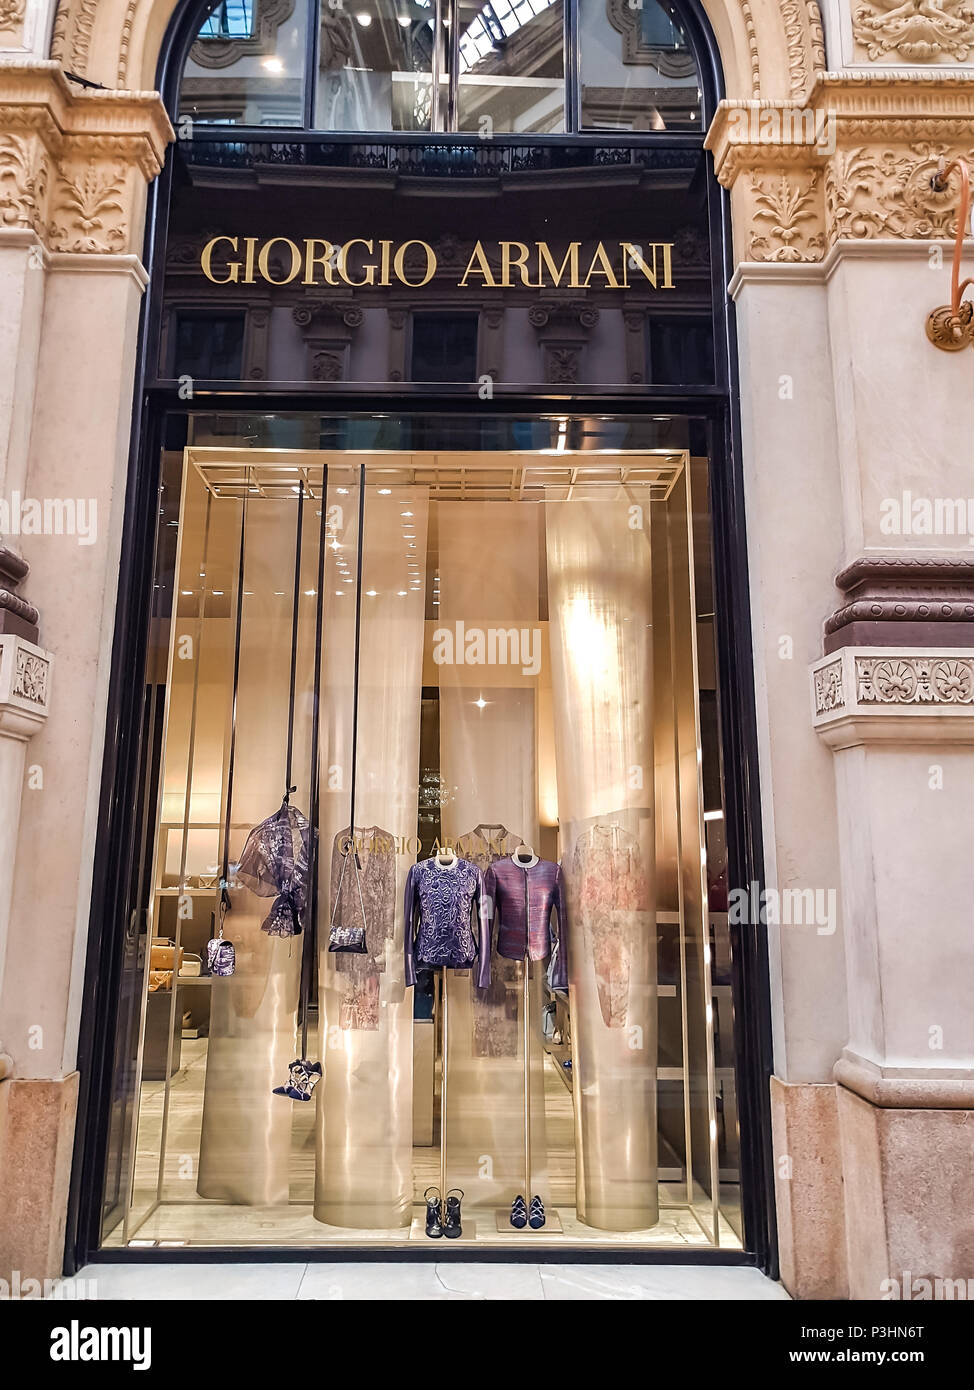 The new Giorgio Armani store in Milan, in Via Sant'Andrea